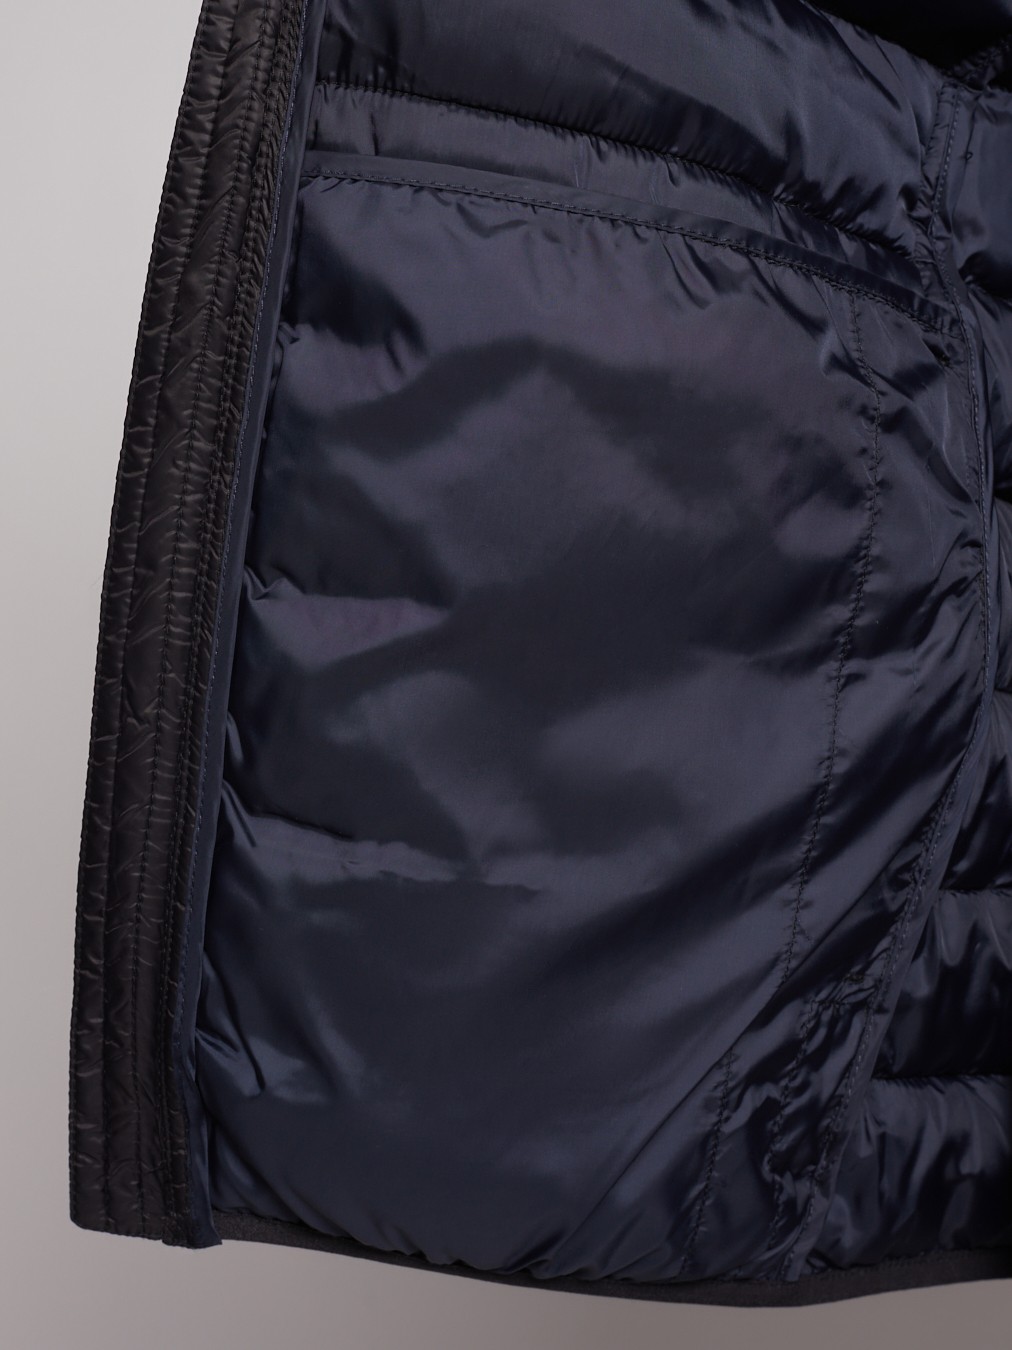 Утеплённый жилет с воротником-стойкой zolla 012335302044, цвет черный, размер S - фото 3